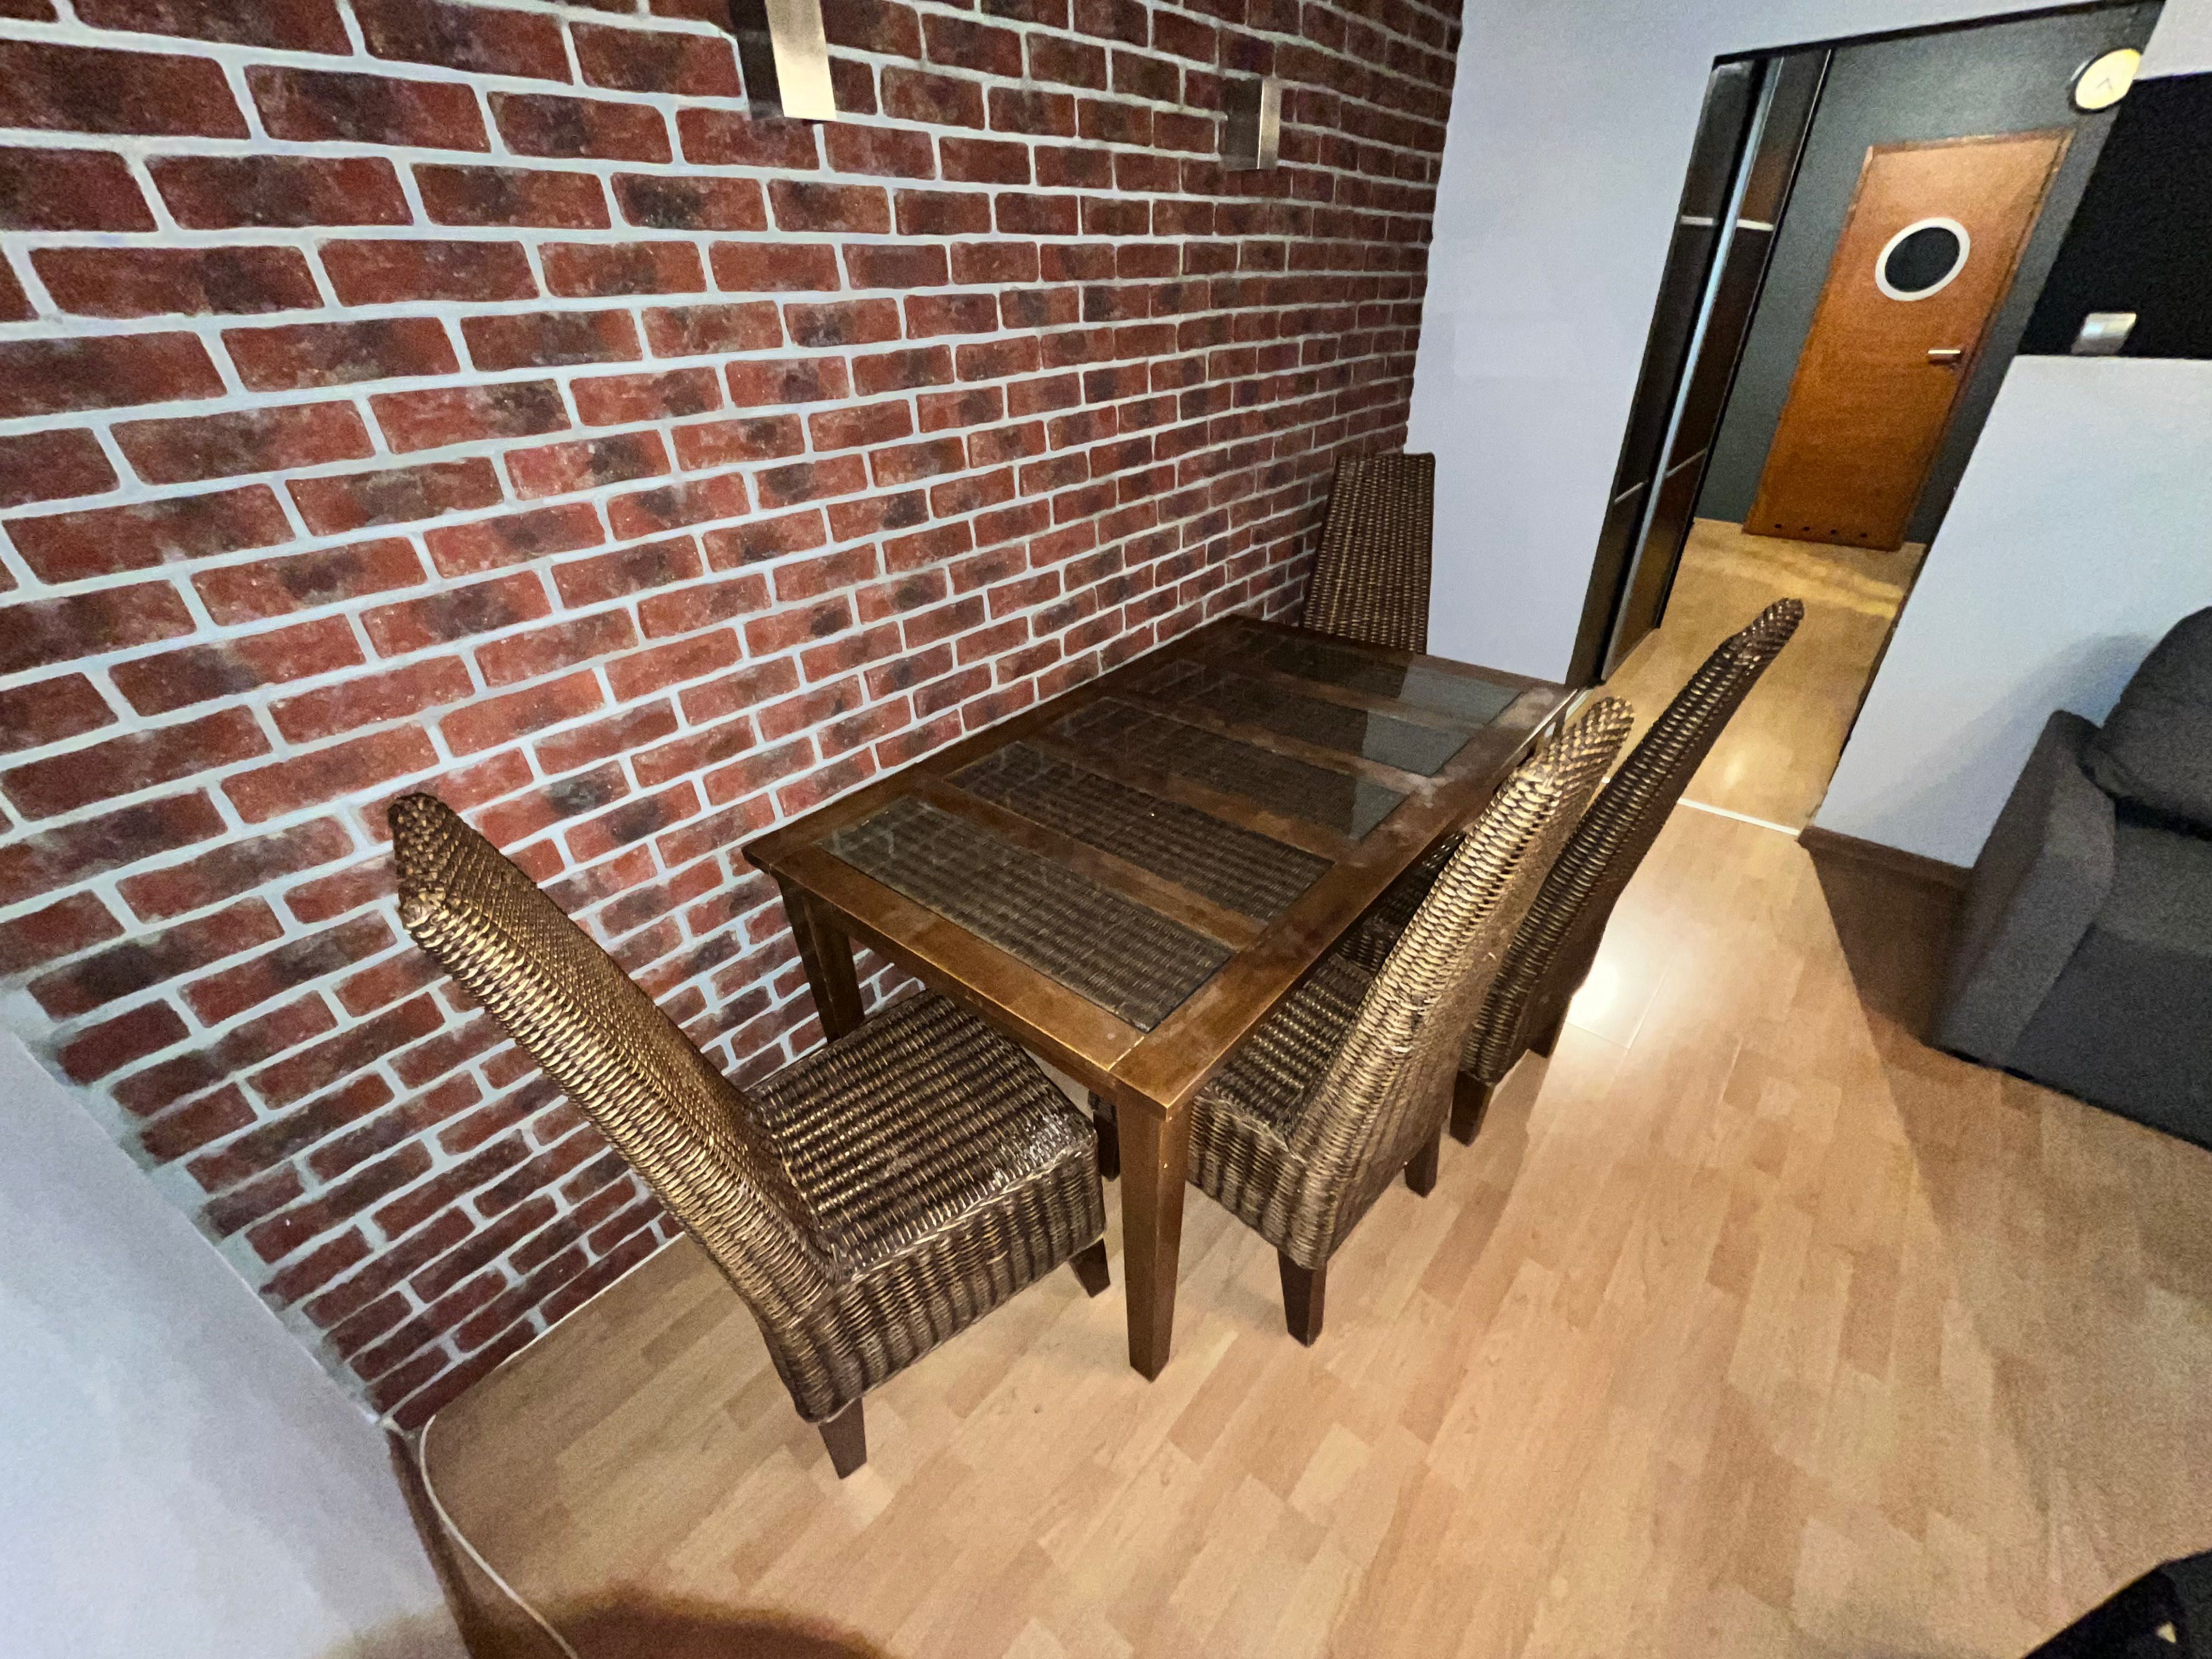 Drewniany stół i 4 ratanowe (wiklinowe) krzesła